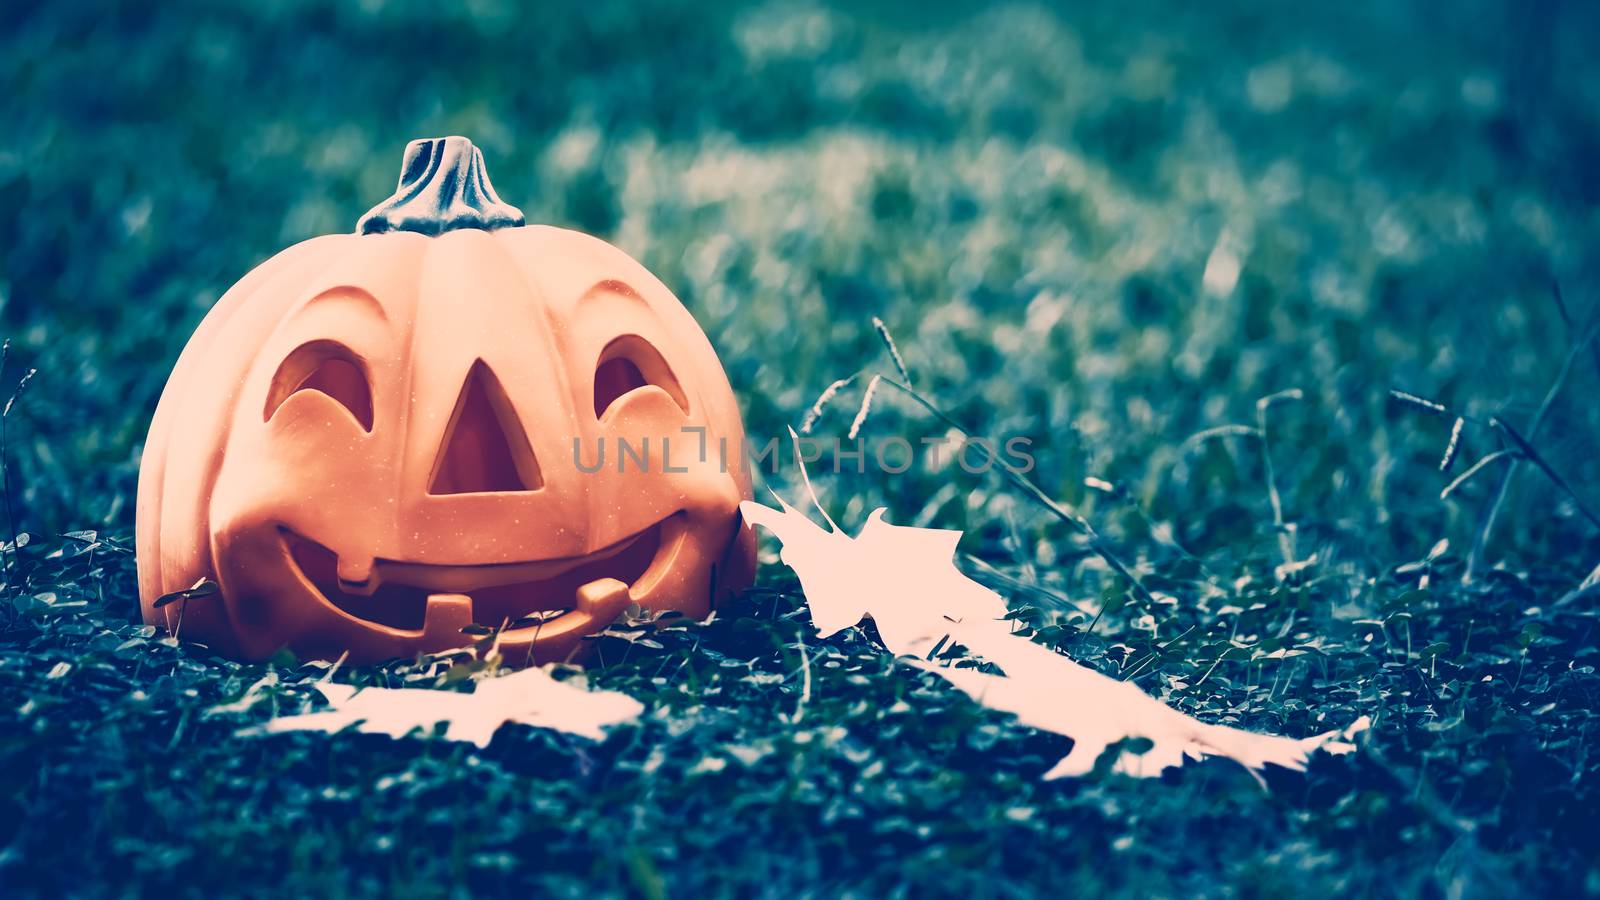 Halloween pumpkin in the forest by Anna_Omelchenko